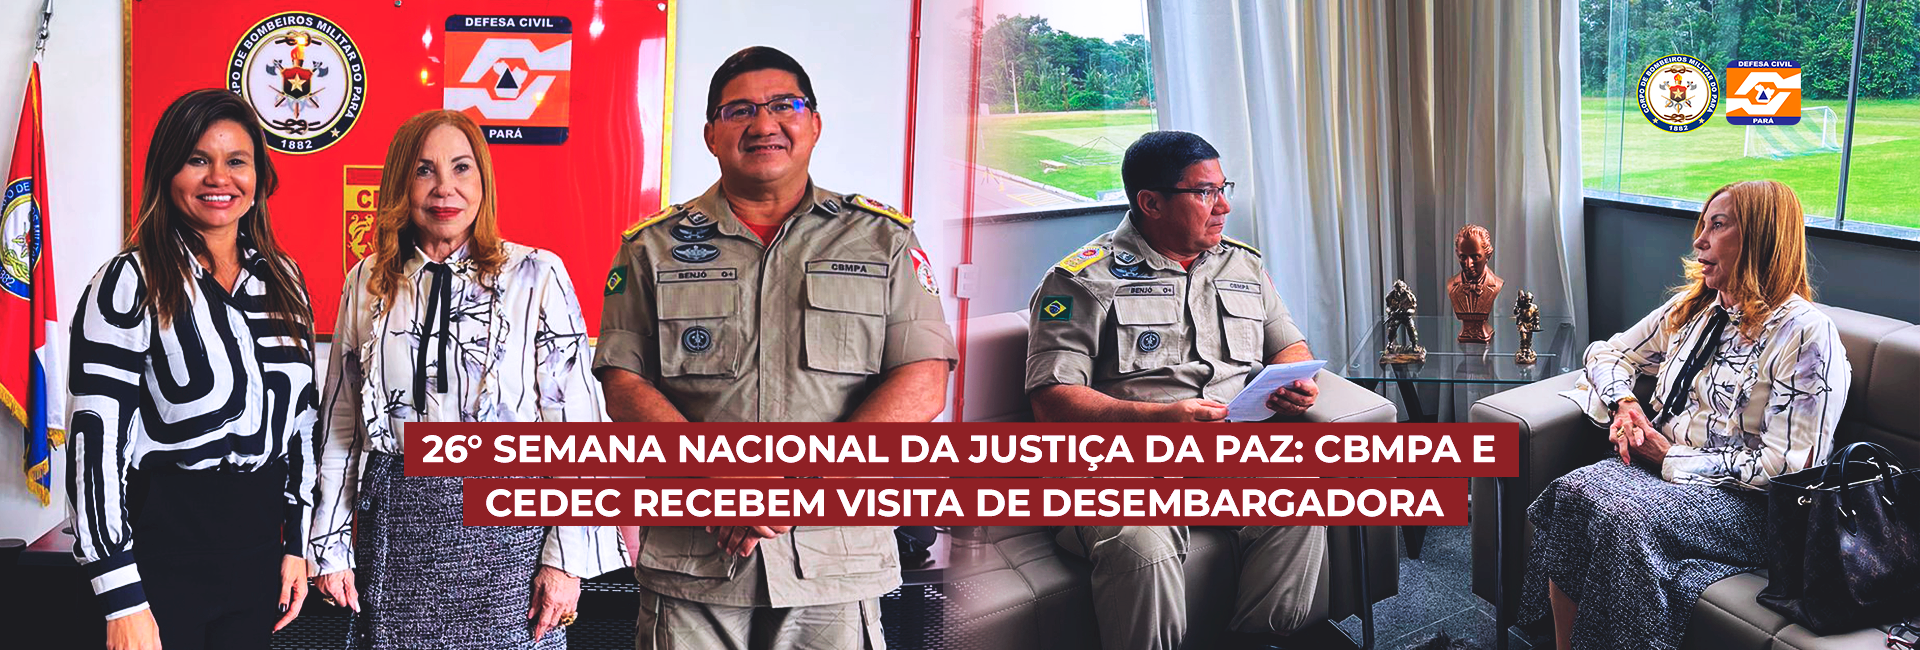 26° SEMANA NACIONAL DA JUSTIÇA DA PAZ: CBMPA E CEDEC RECEBEM VISITA DE DESEMBARGADORA